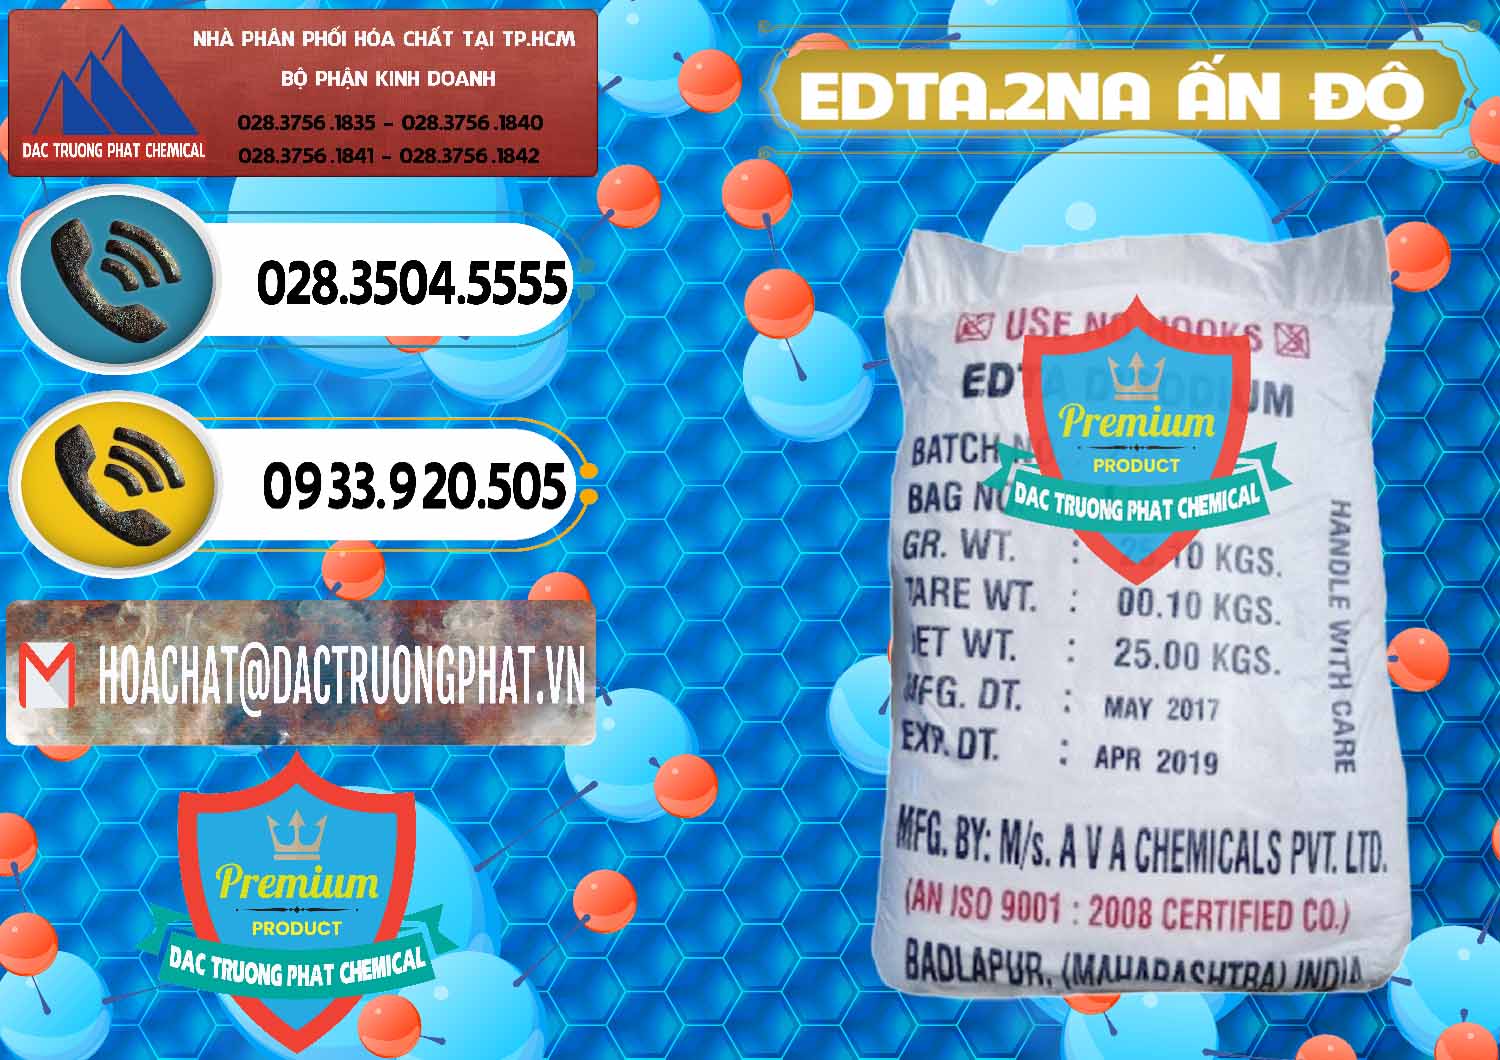 Cty bán & cung cấp EDTA.2NA - Ethylendiamin Tetraacetic Ấn Độ India - 0416 - Nơi phân phối - cung cấp hóa chất tại TP.HCM - hoachatdetnhuom.vn